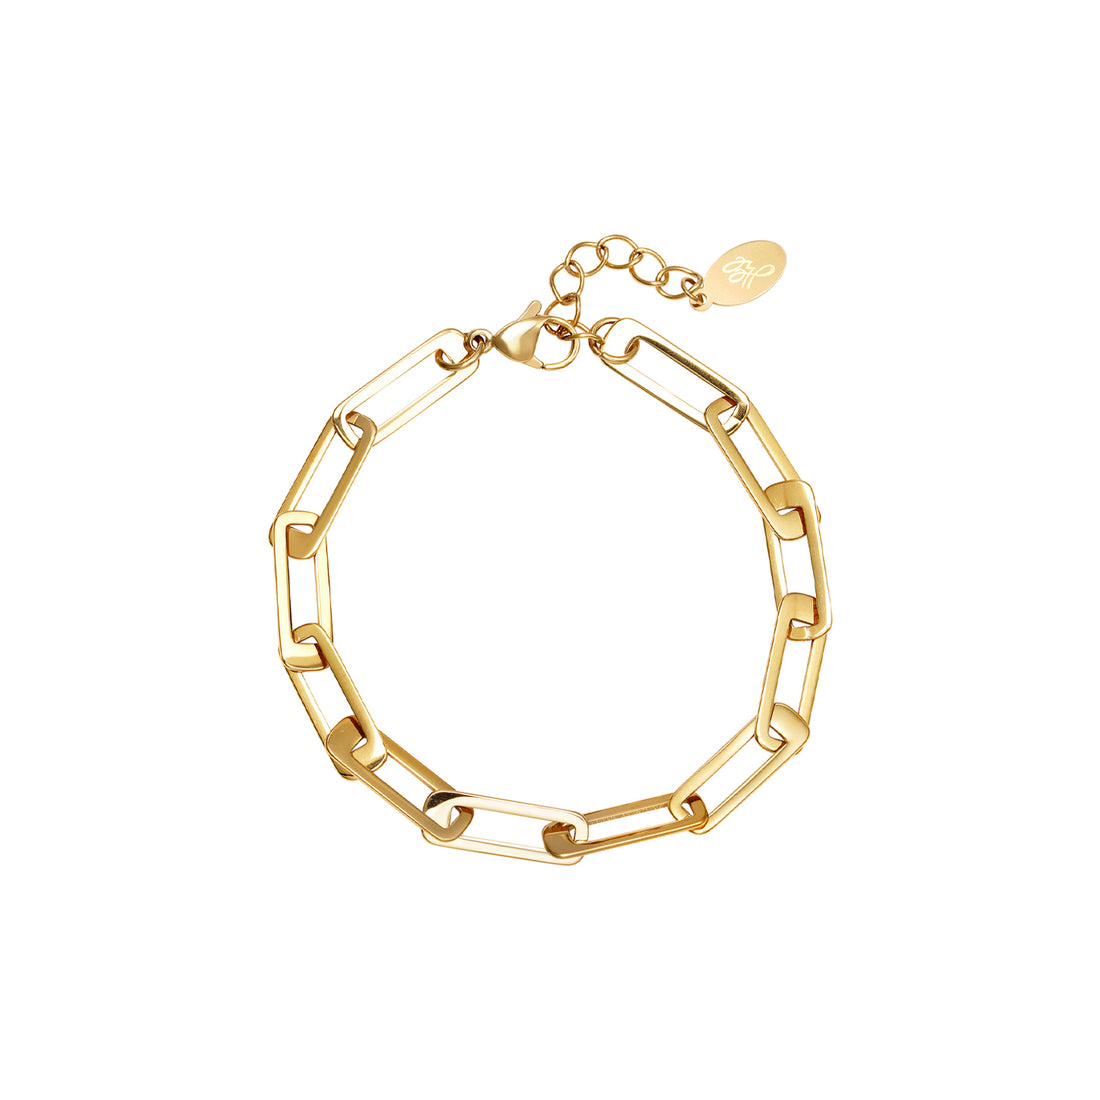 Gouden brede chain armband. De armband is gemaakt van roestvrij staal met een gold plated laagje. De armband is waterproof en verkleurt niet. Afmetingen: 16 cm + 3cm. 